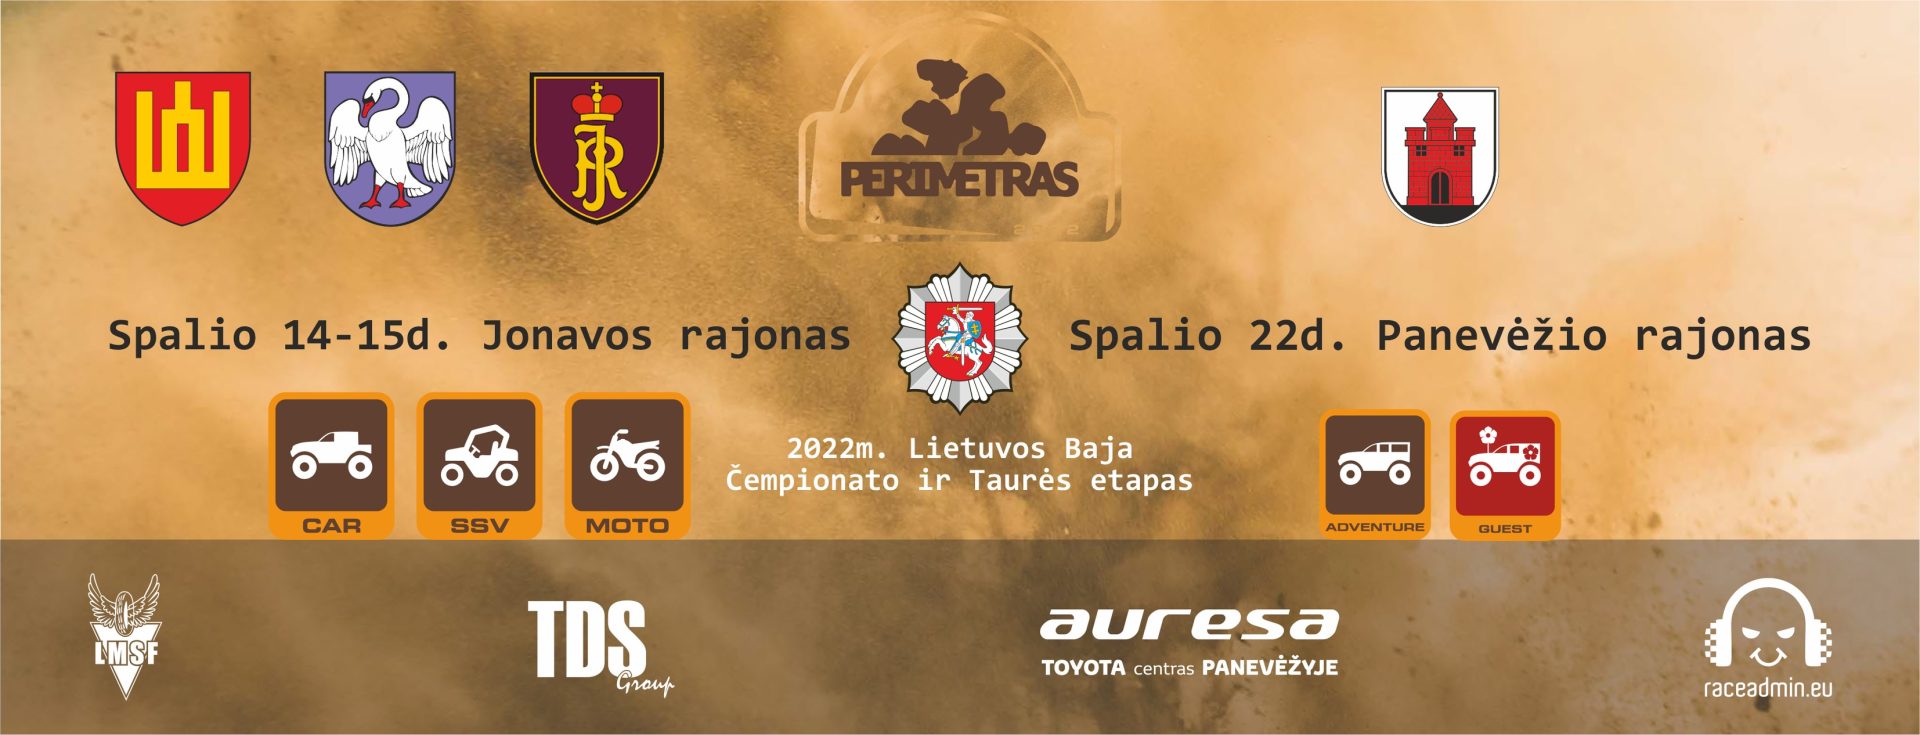 2022 m. Lietuvos Baja (Rally raid) čempionato VI etapas